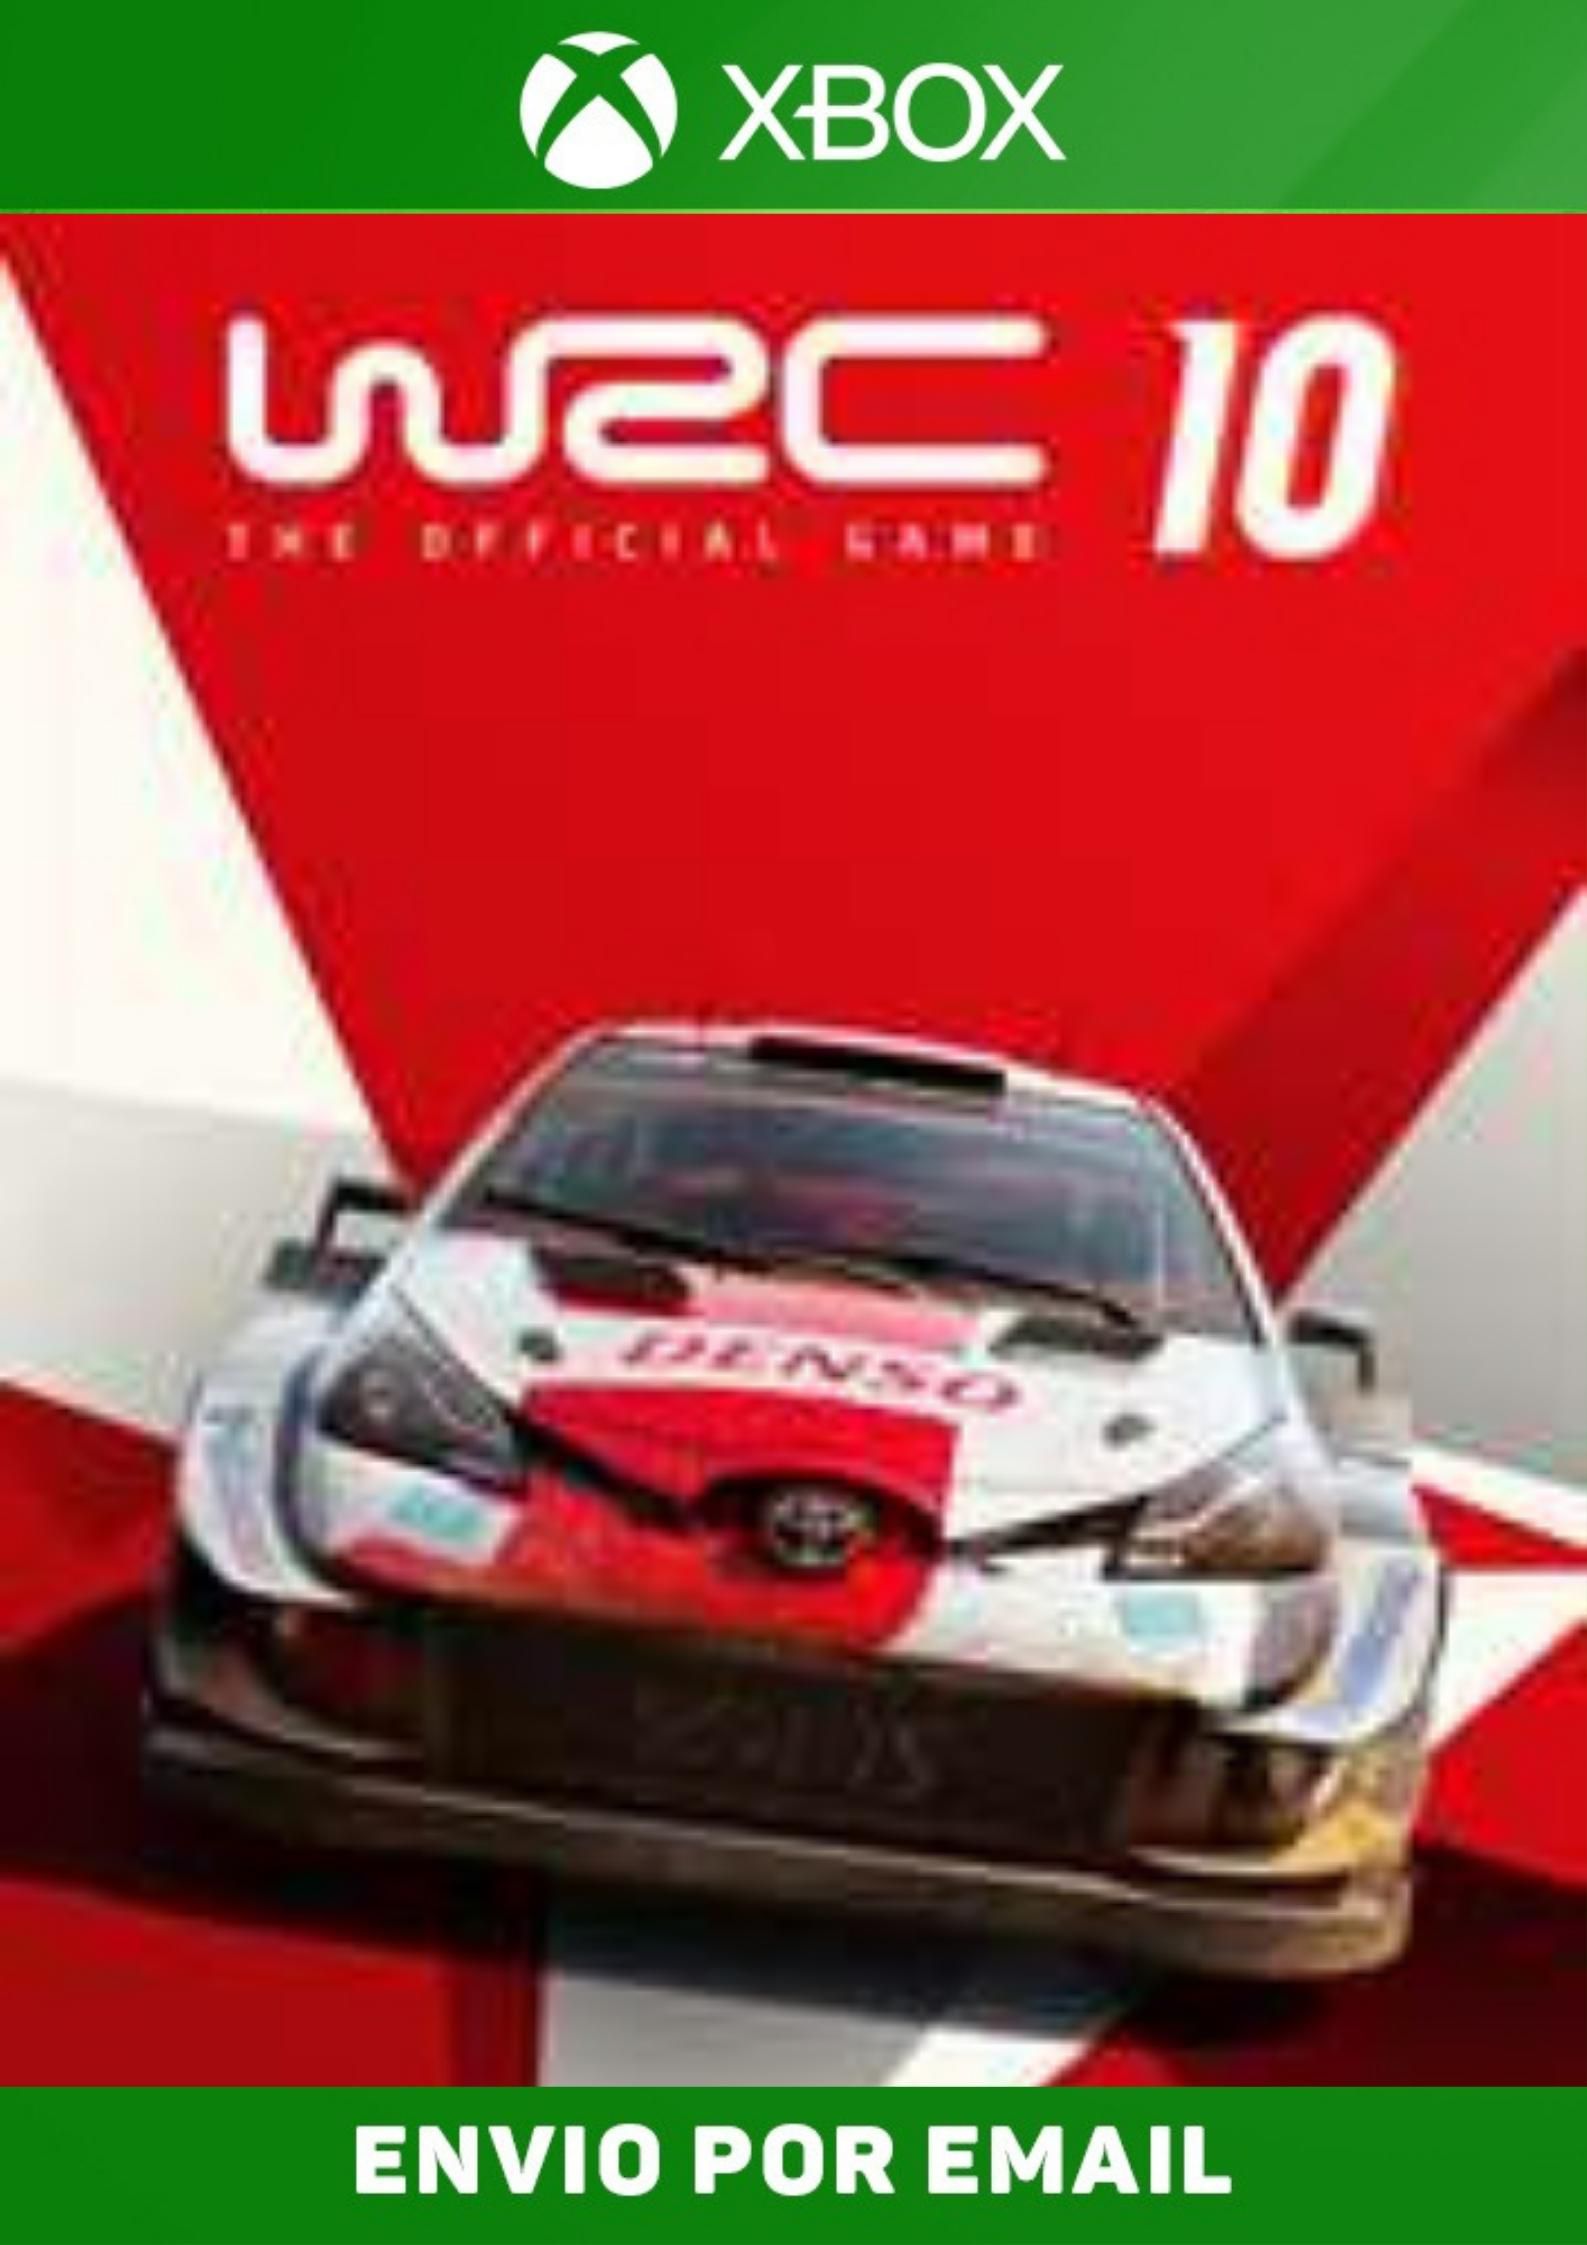 Jogo PS4 WRC 10